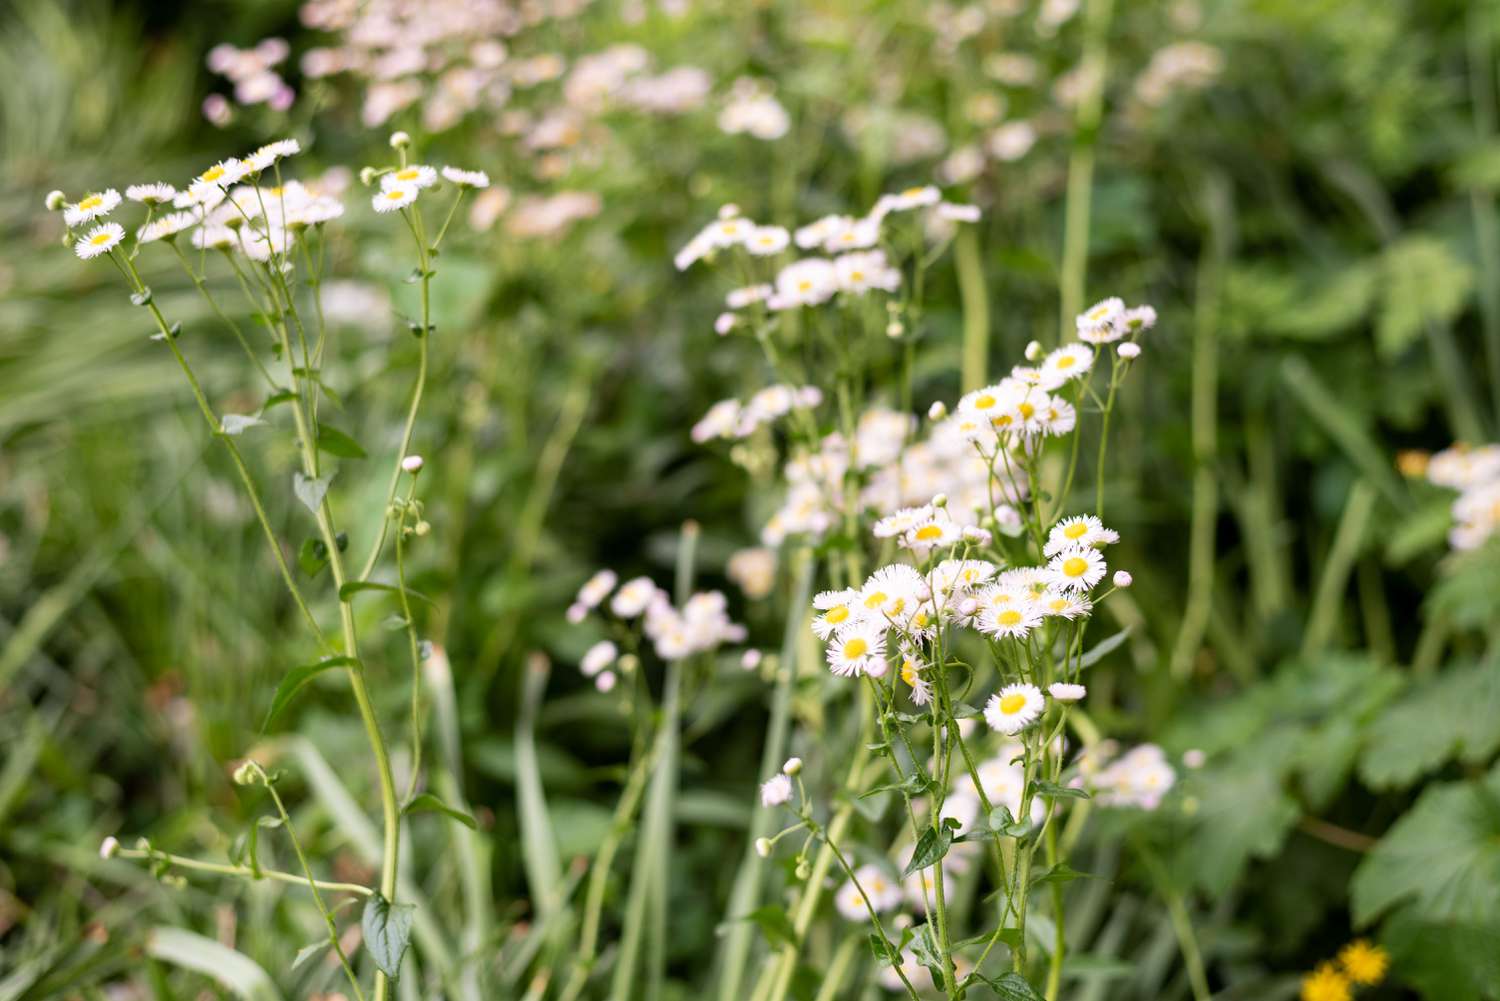 Planta de beldroegas mexicanas com pequenas flores brancas em hastes altas e finas